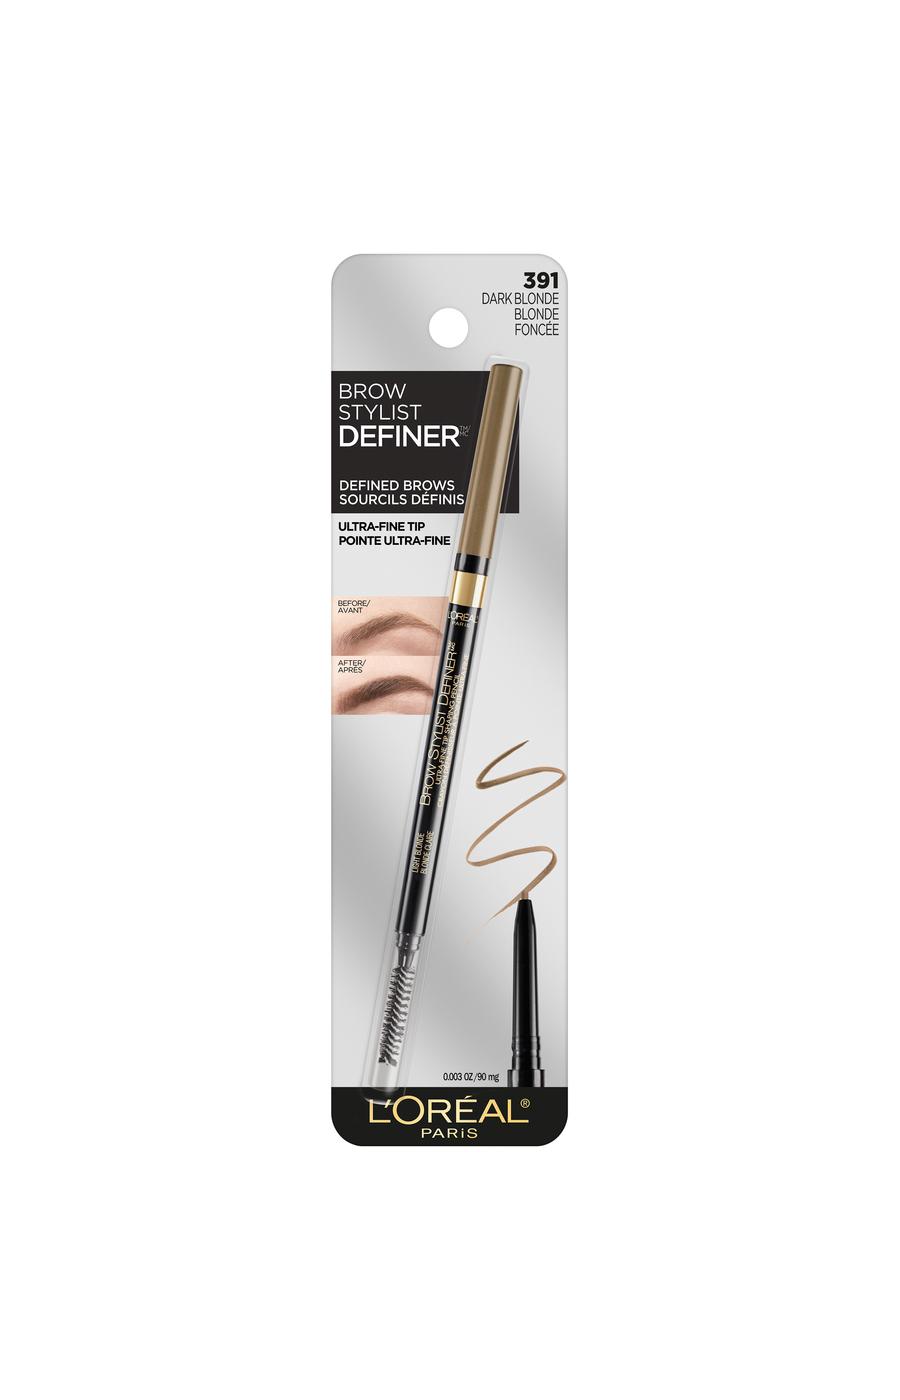 L'Oréal Paris Brow Stylist Definer Waterproof Eyebrow Mechanical Pencil Dark Blonde; image 1 of 6